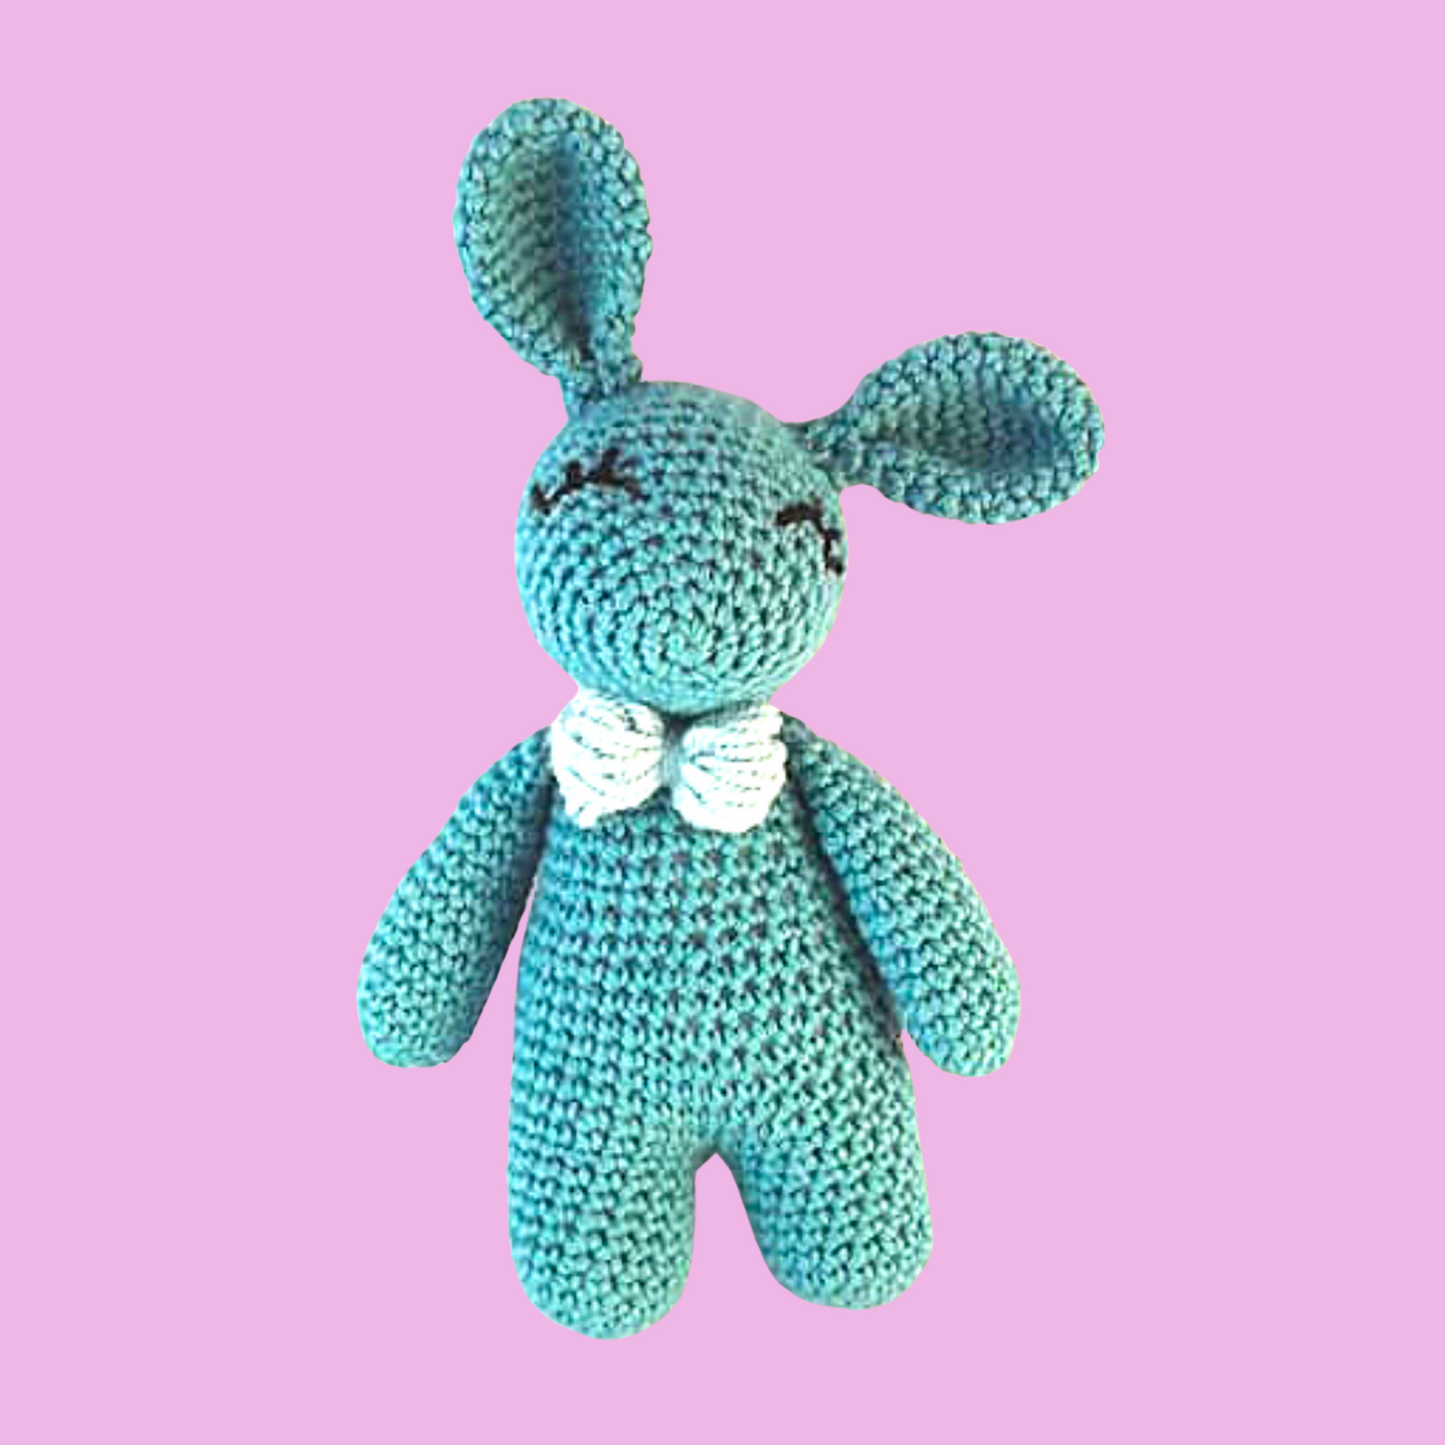 Alpaca Bunny Rabbit Crochet Kit - suitable for complete beginners